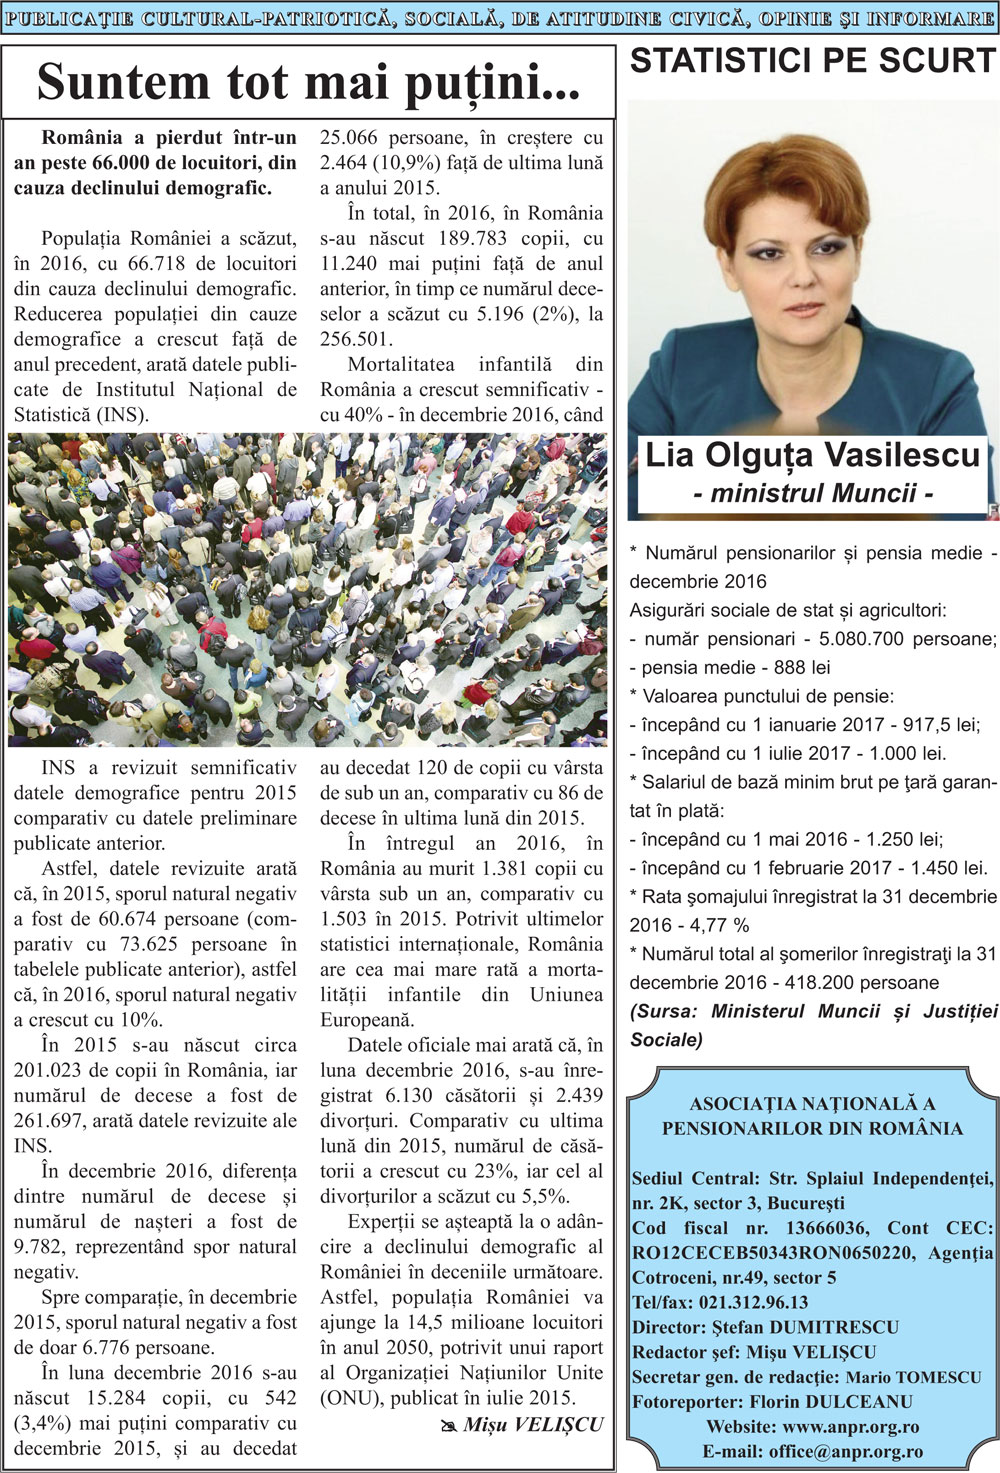 Ziarul Vocea Pensionarilor luna februarie 2017